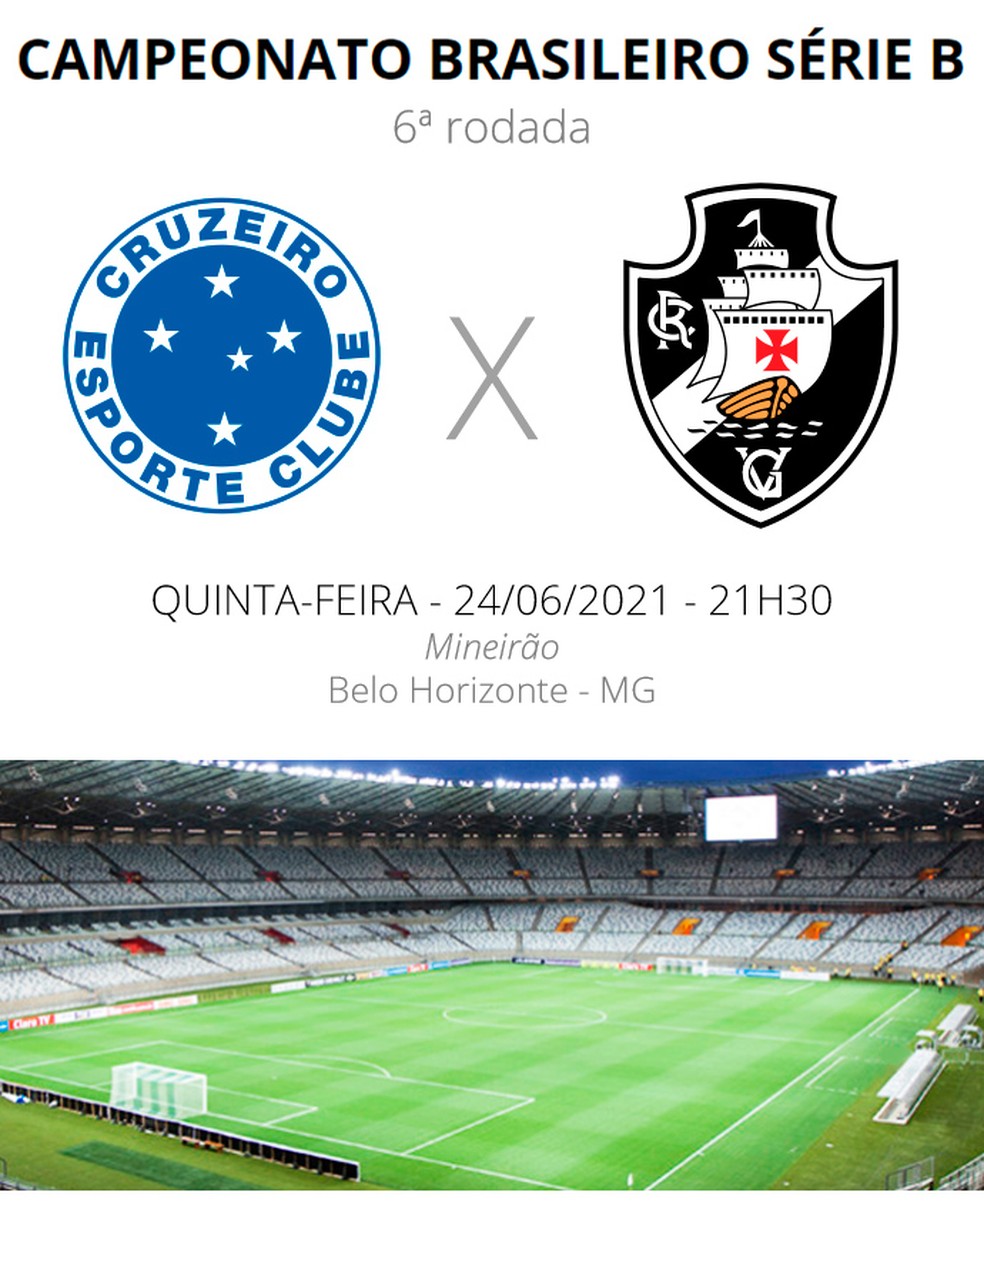 Onde assistir ao vivo a Vasco x Cruzeiro, pelo Brasileirão Série A 2021?